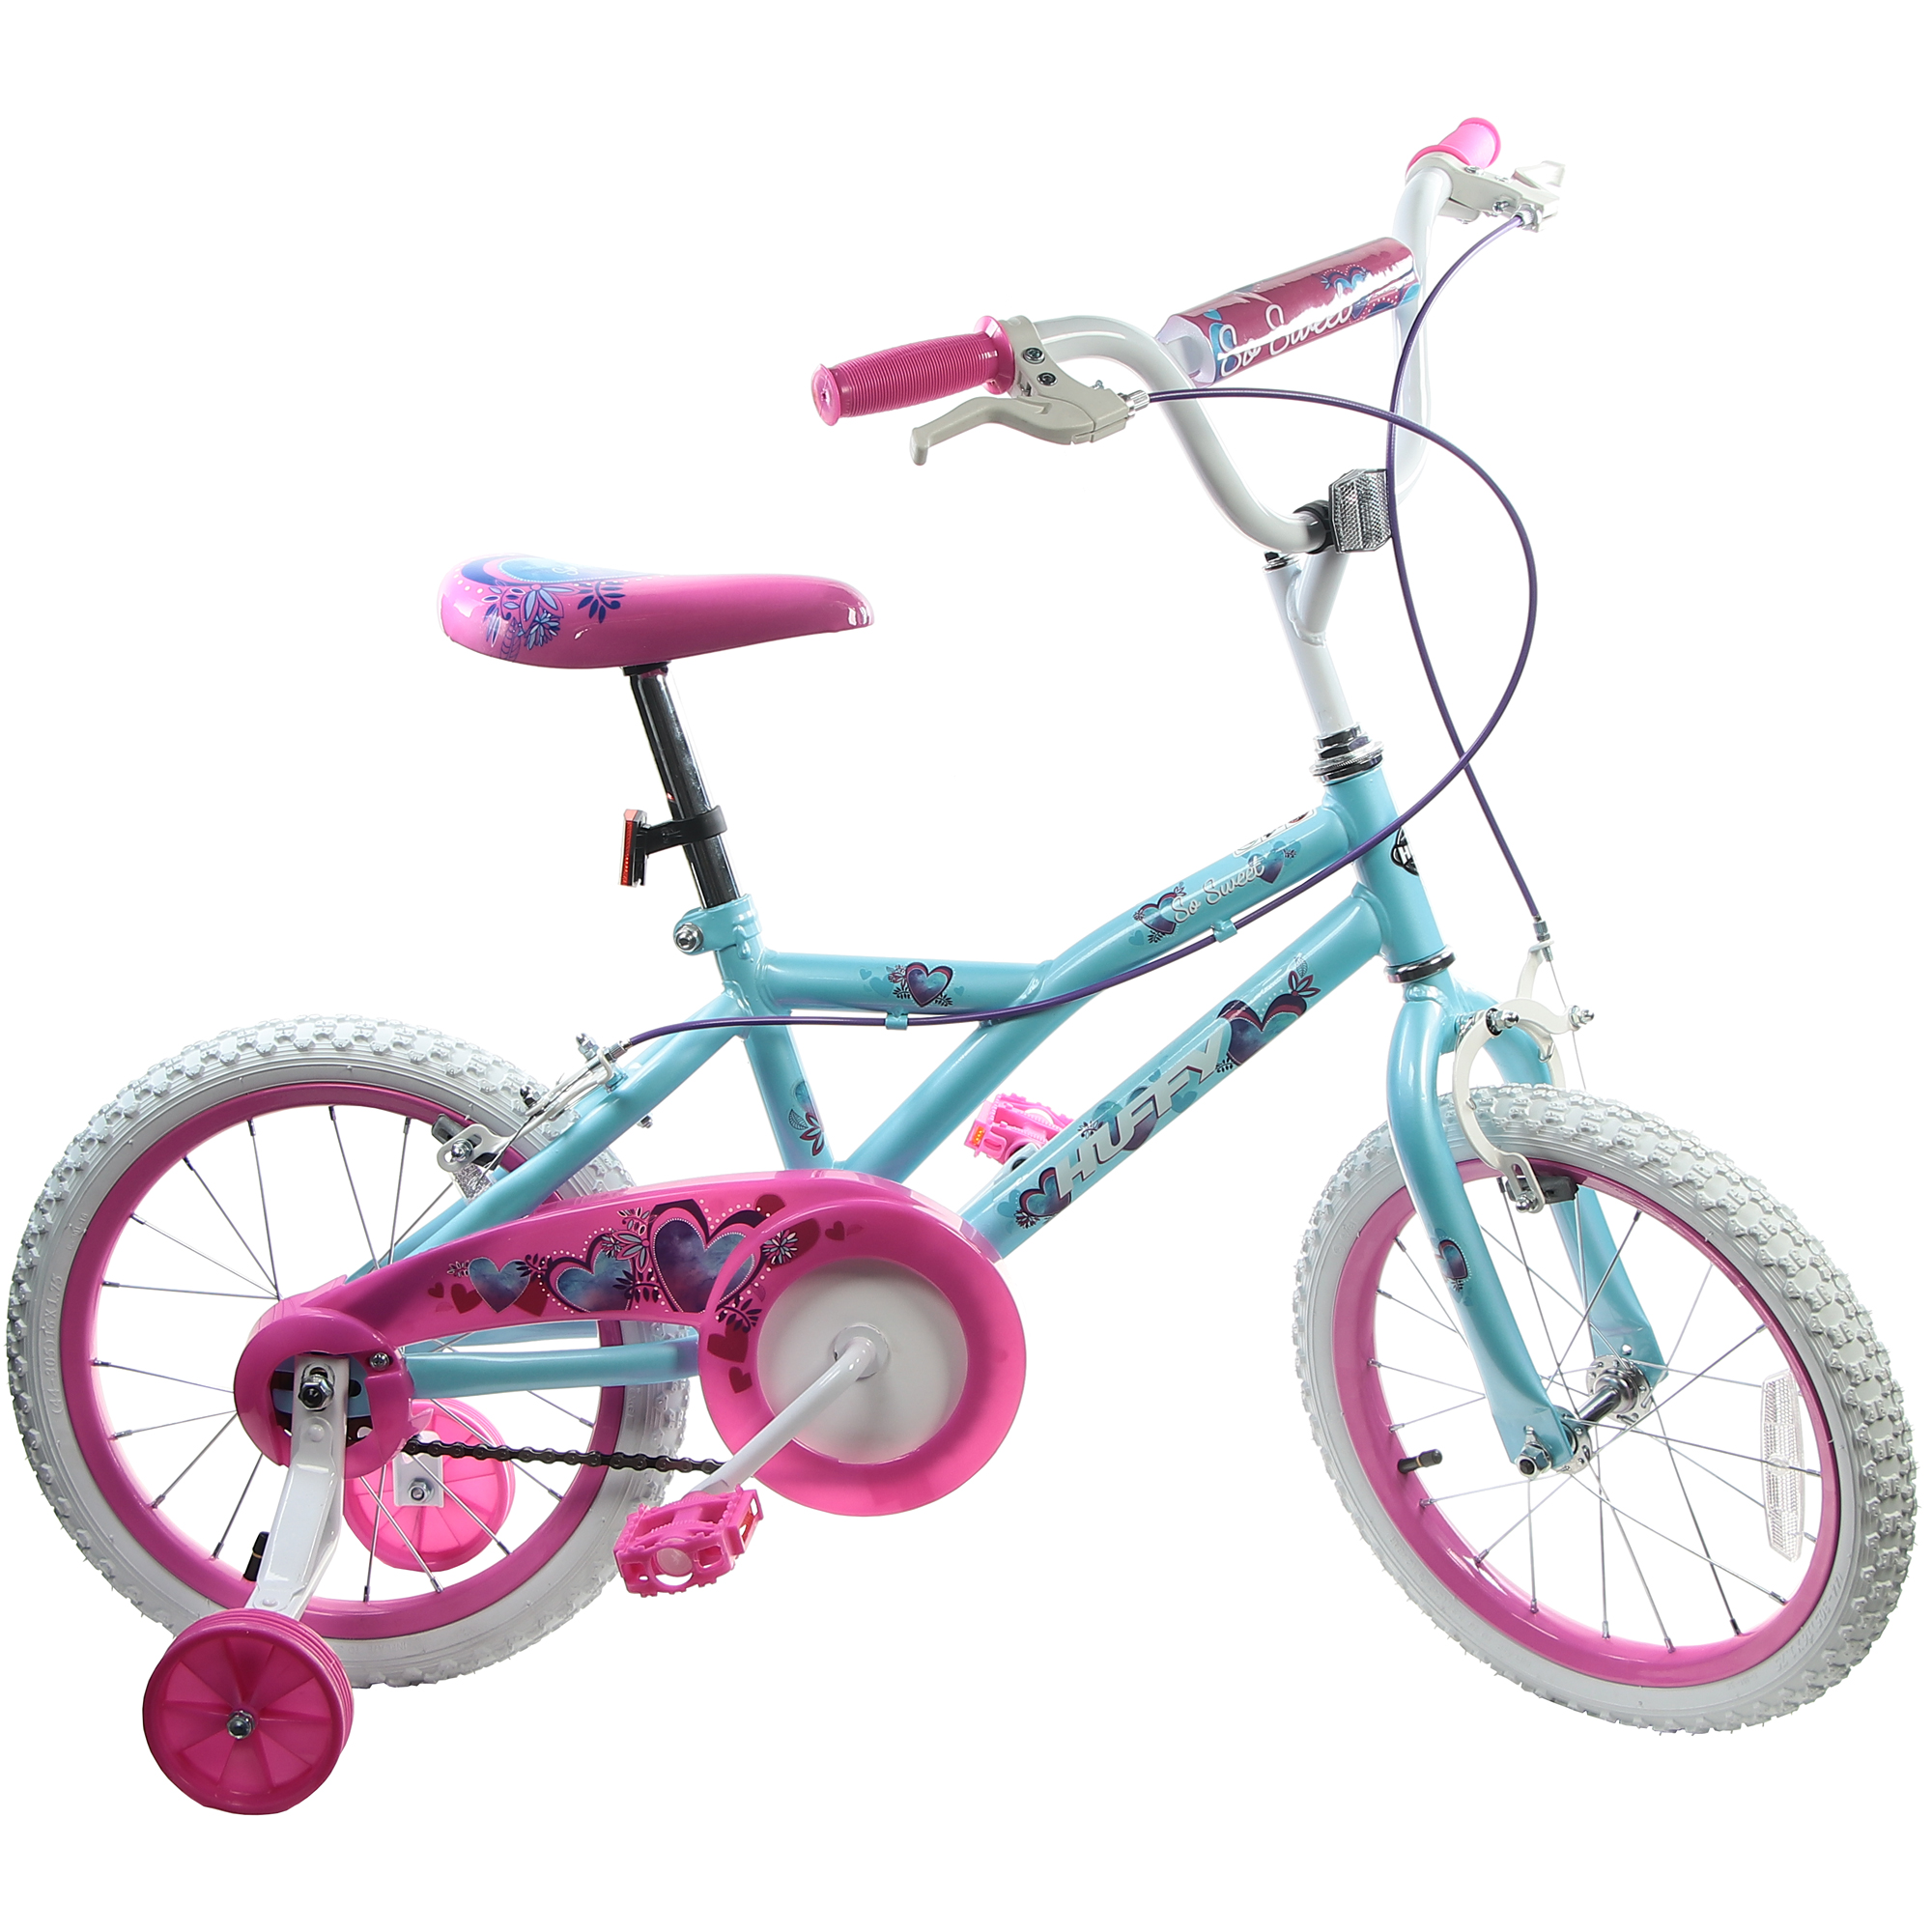 Велосипед детский Huffy So sweet, 16, для девочек детский двухколесный велосипед mobile kid